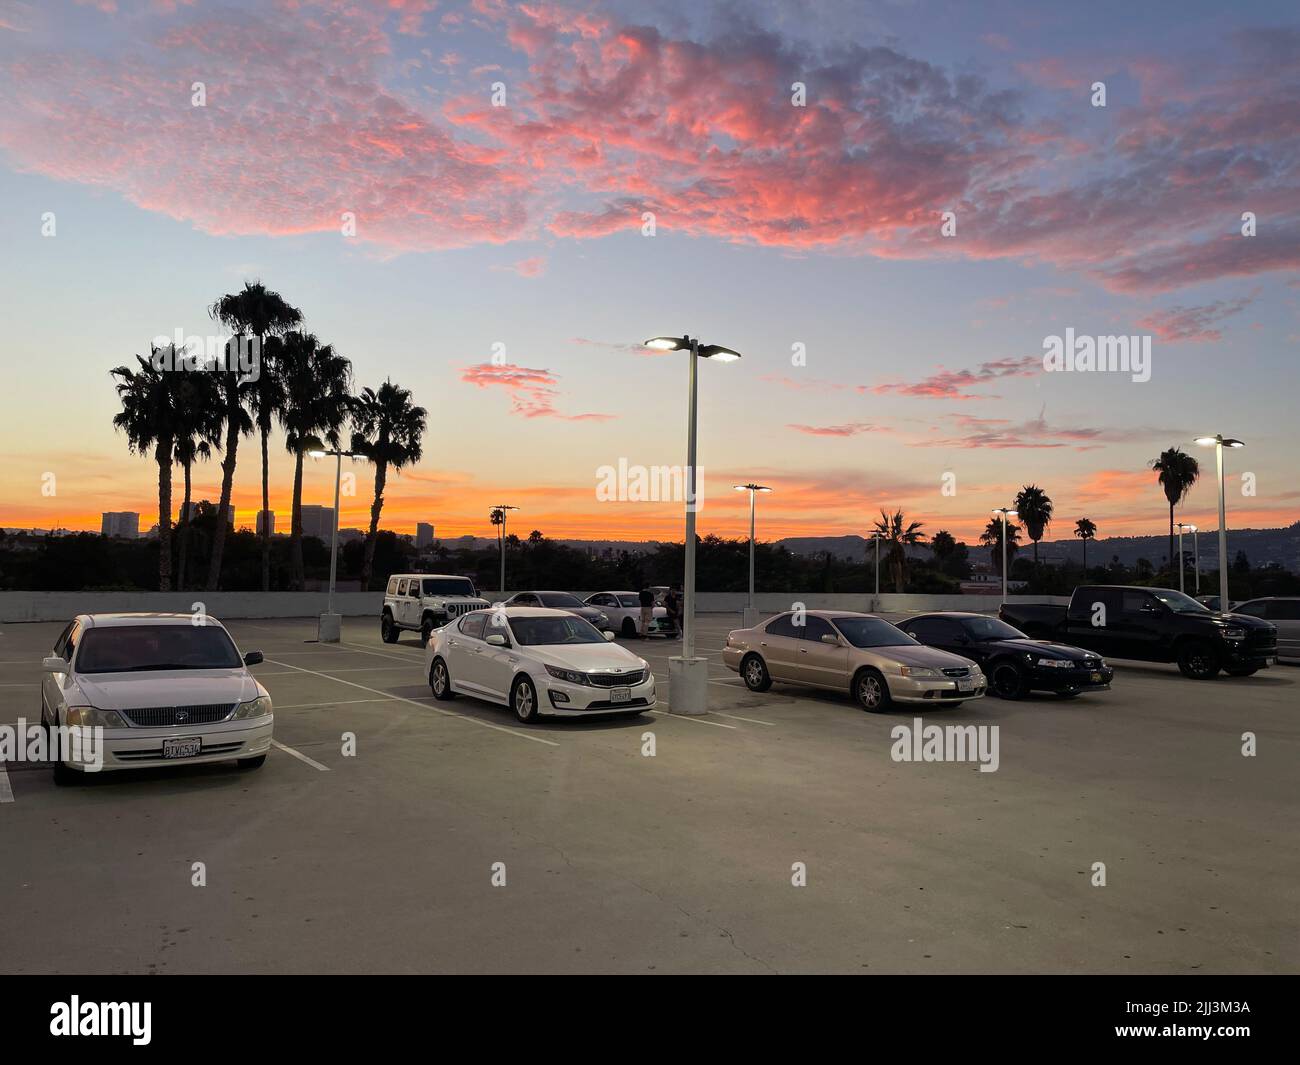 Parcheggio sul tetto con tramonto colorato a Los Angeles, California Foto Stock